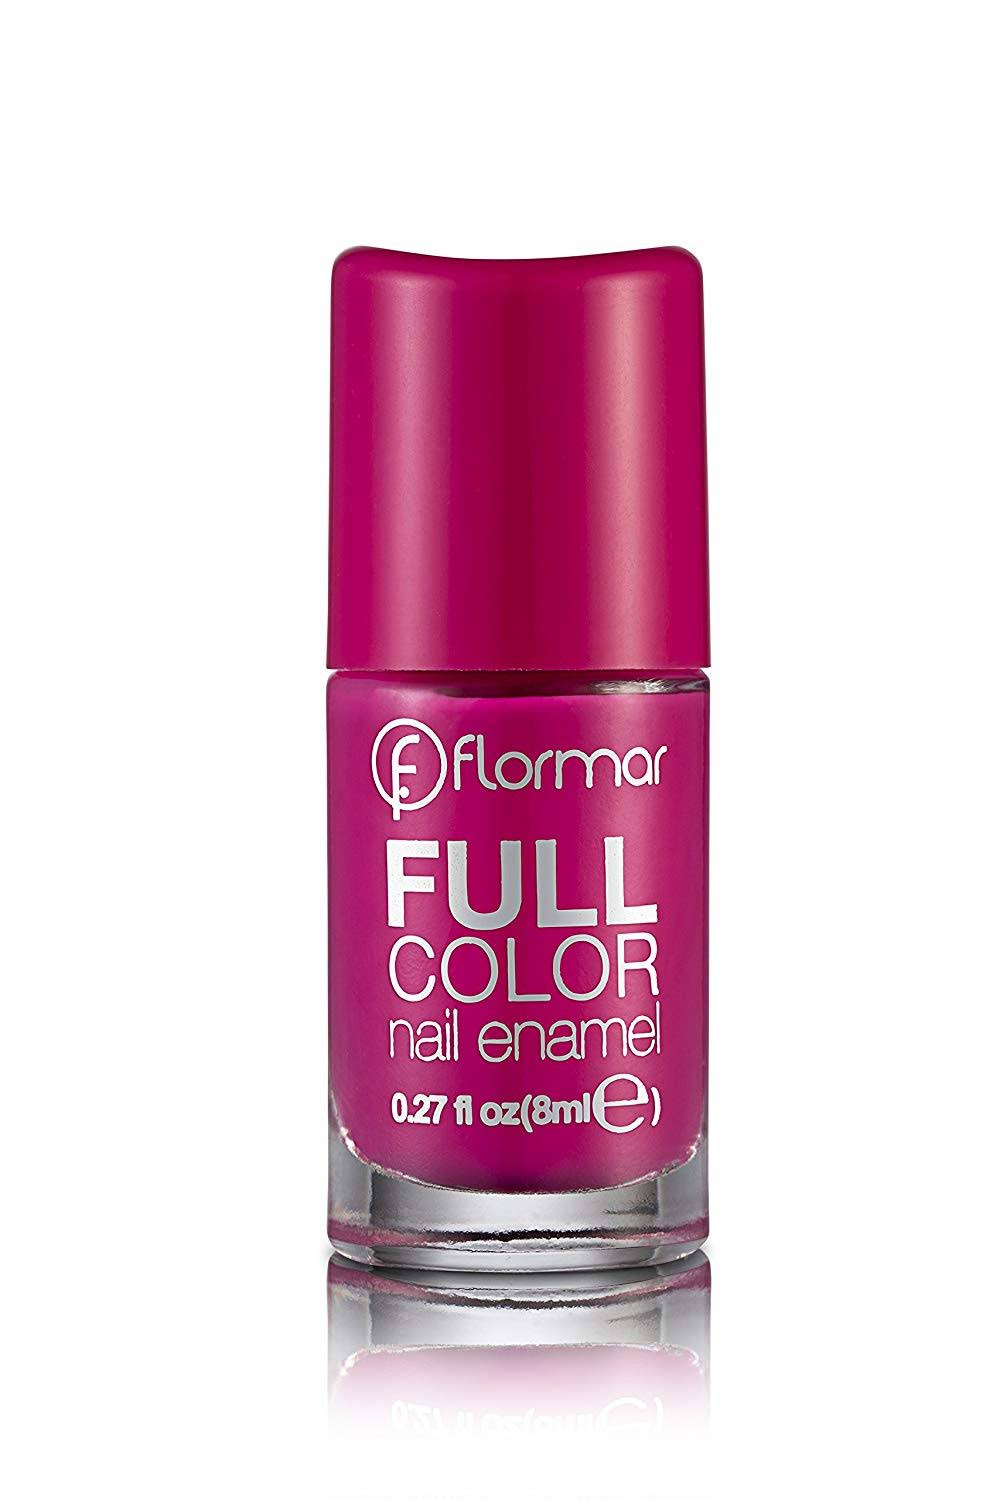 Flormar Full Color Nail Enamel - Funky Magenta